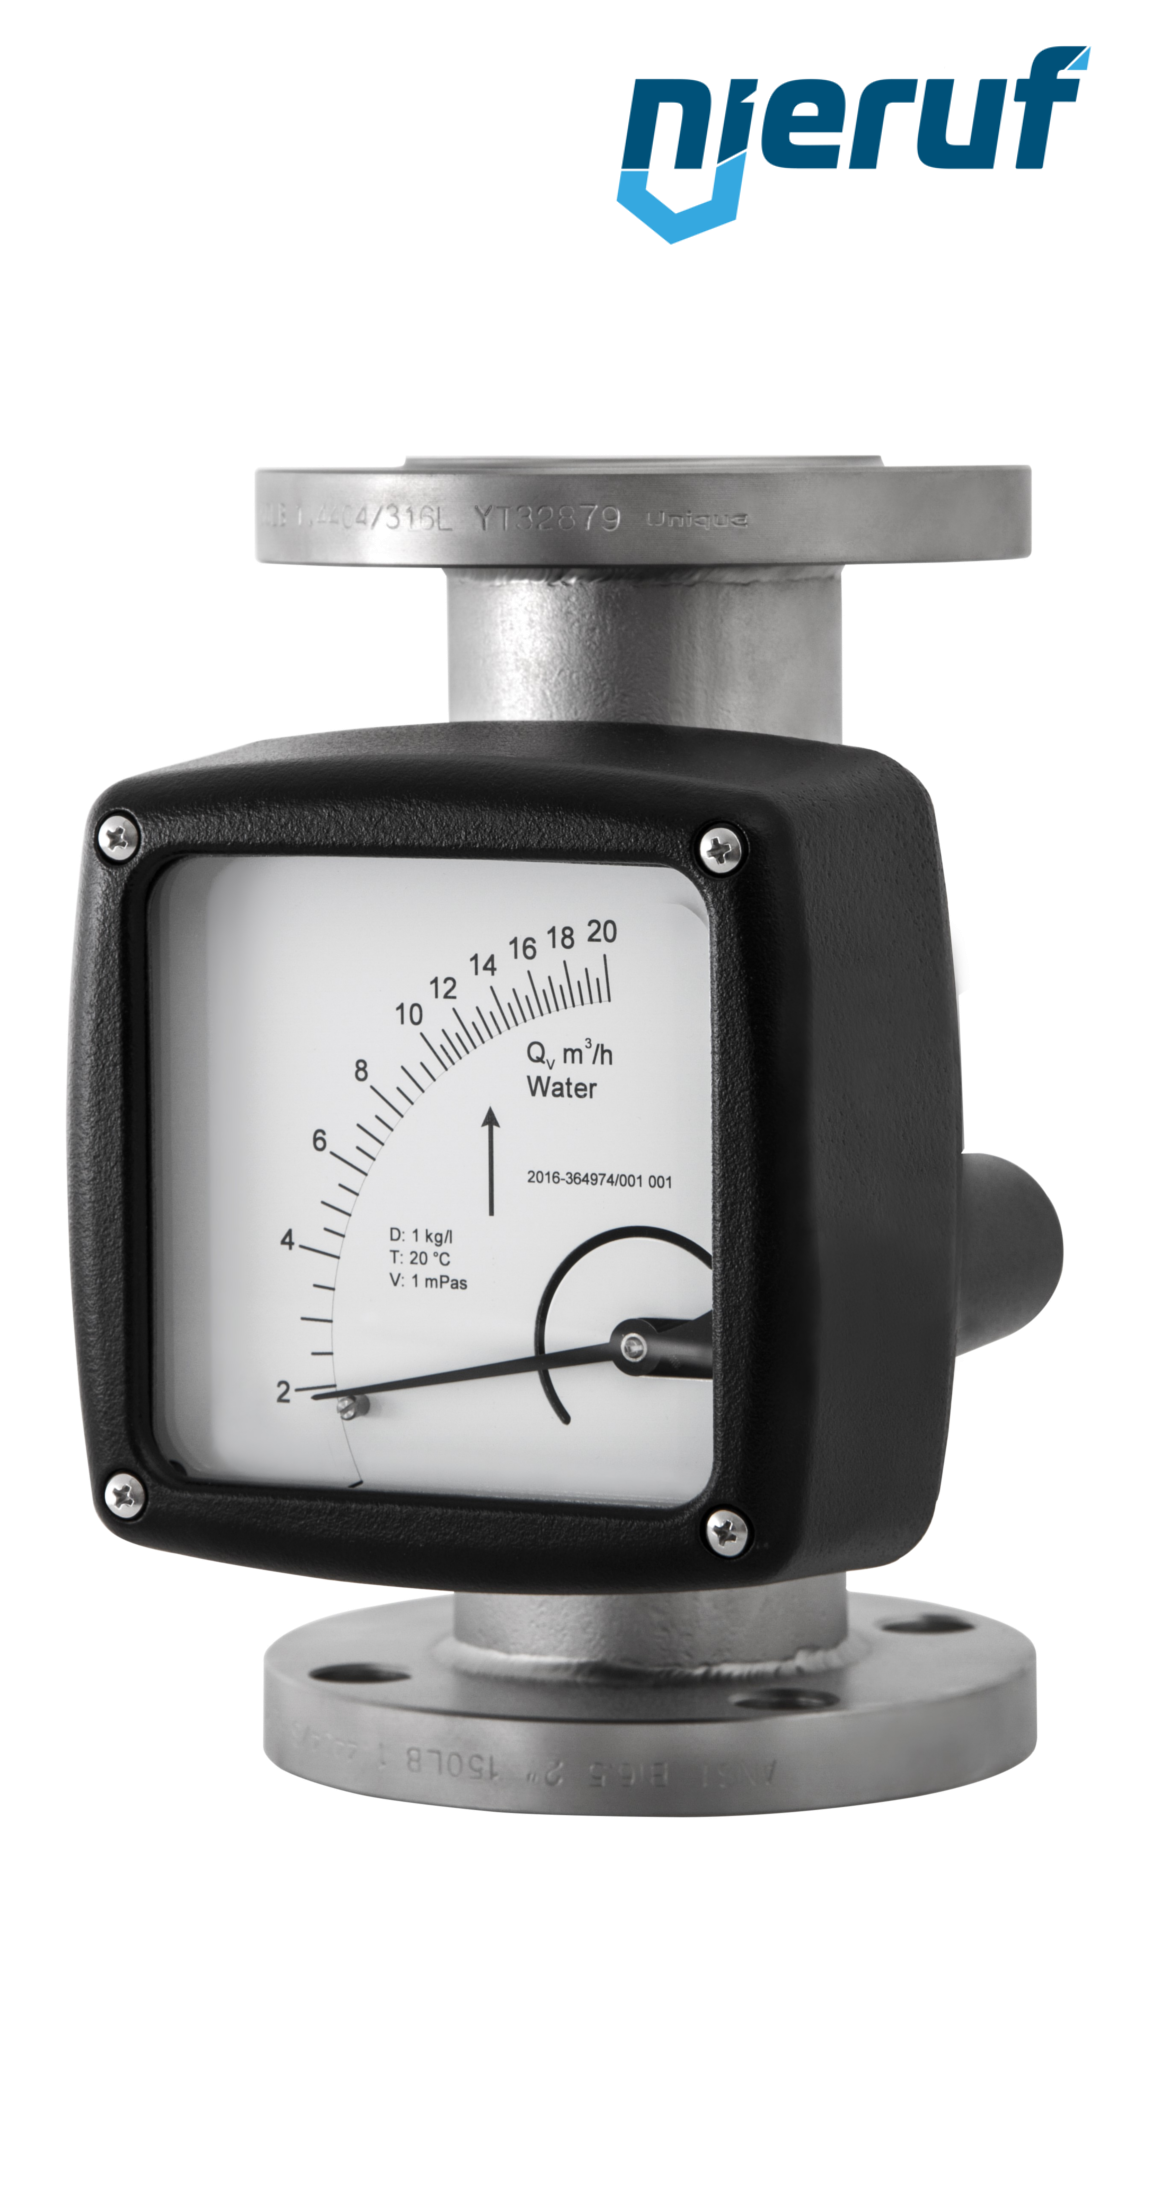 misuratore di flusso / rotametro completamente in metallo DN50-attacco 70,0 - 700,0 m3/h tubo DN50 aria